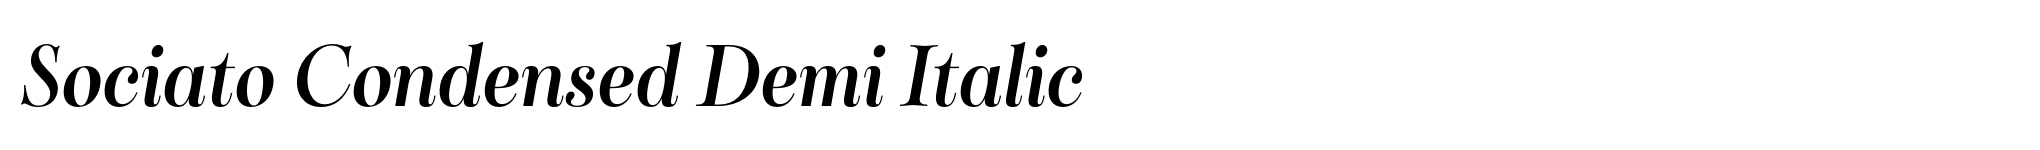 Sociato Condensed Demi Italic image